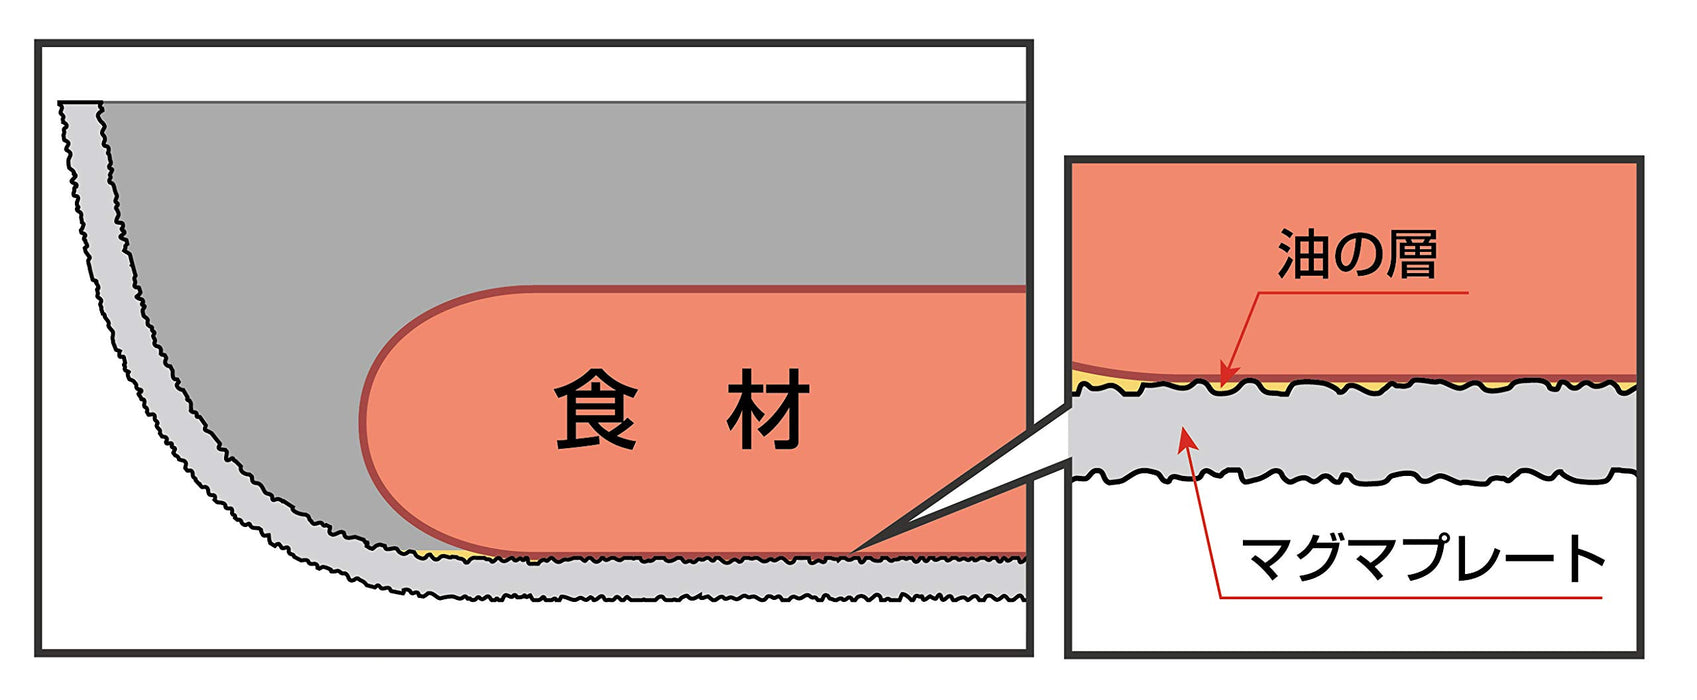 Takumi Japan 30 厘米 Ih 兼容炒锅带熔岩盘和玻璃盖 - 灰色